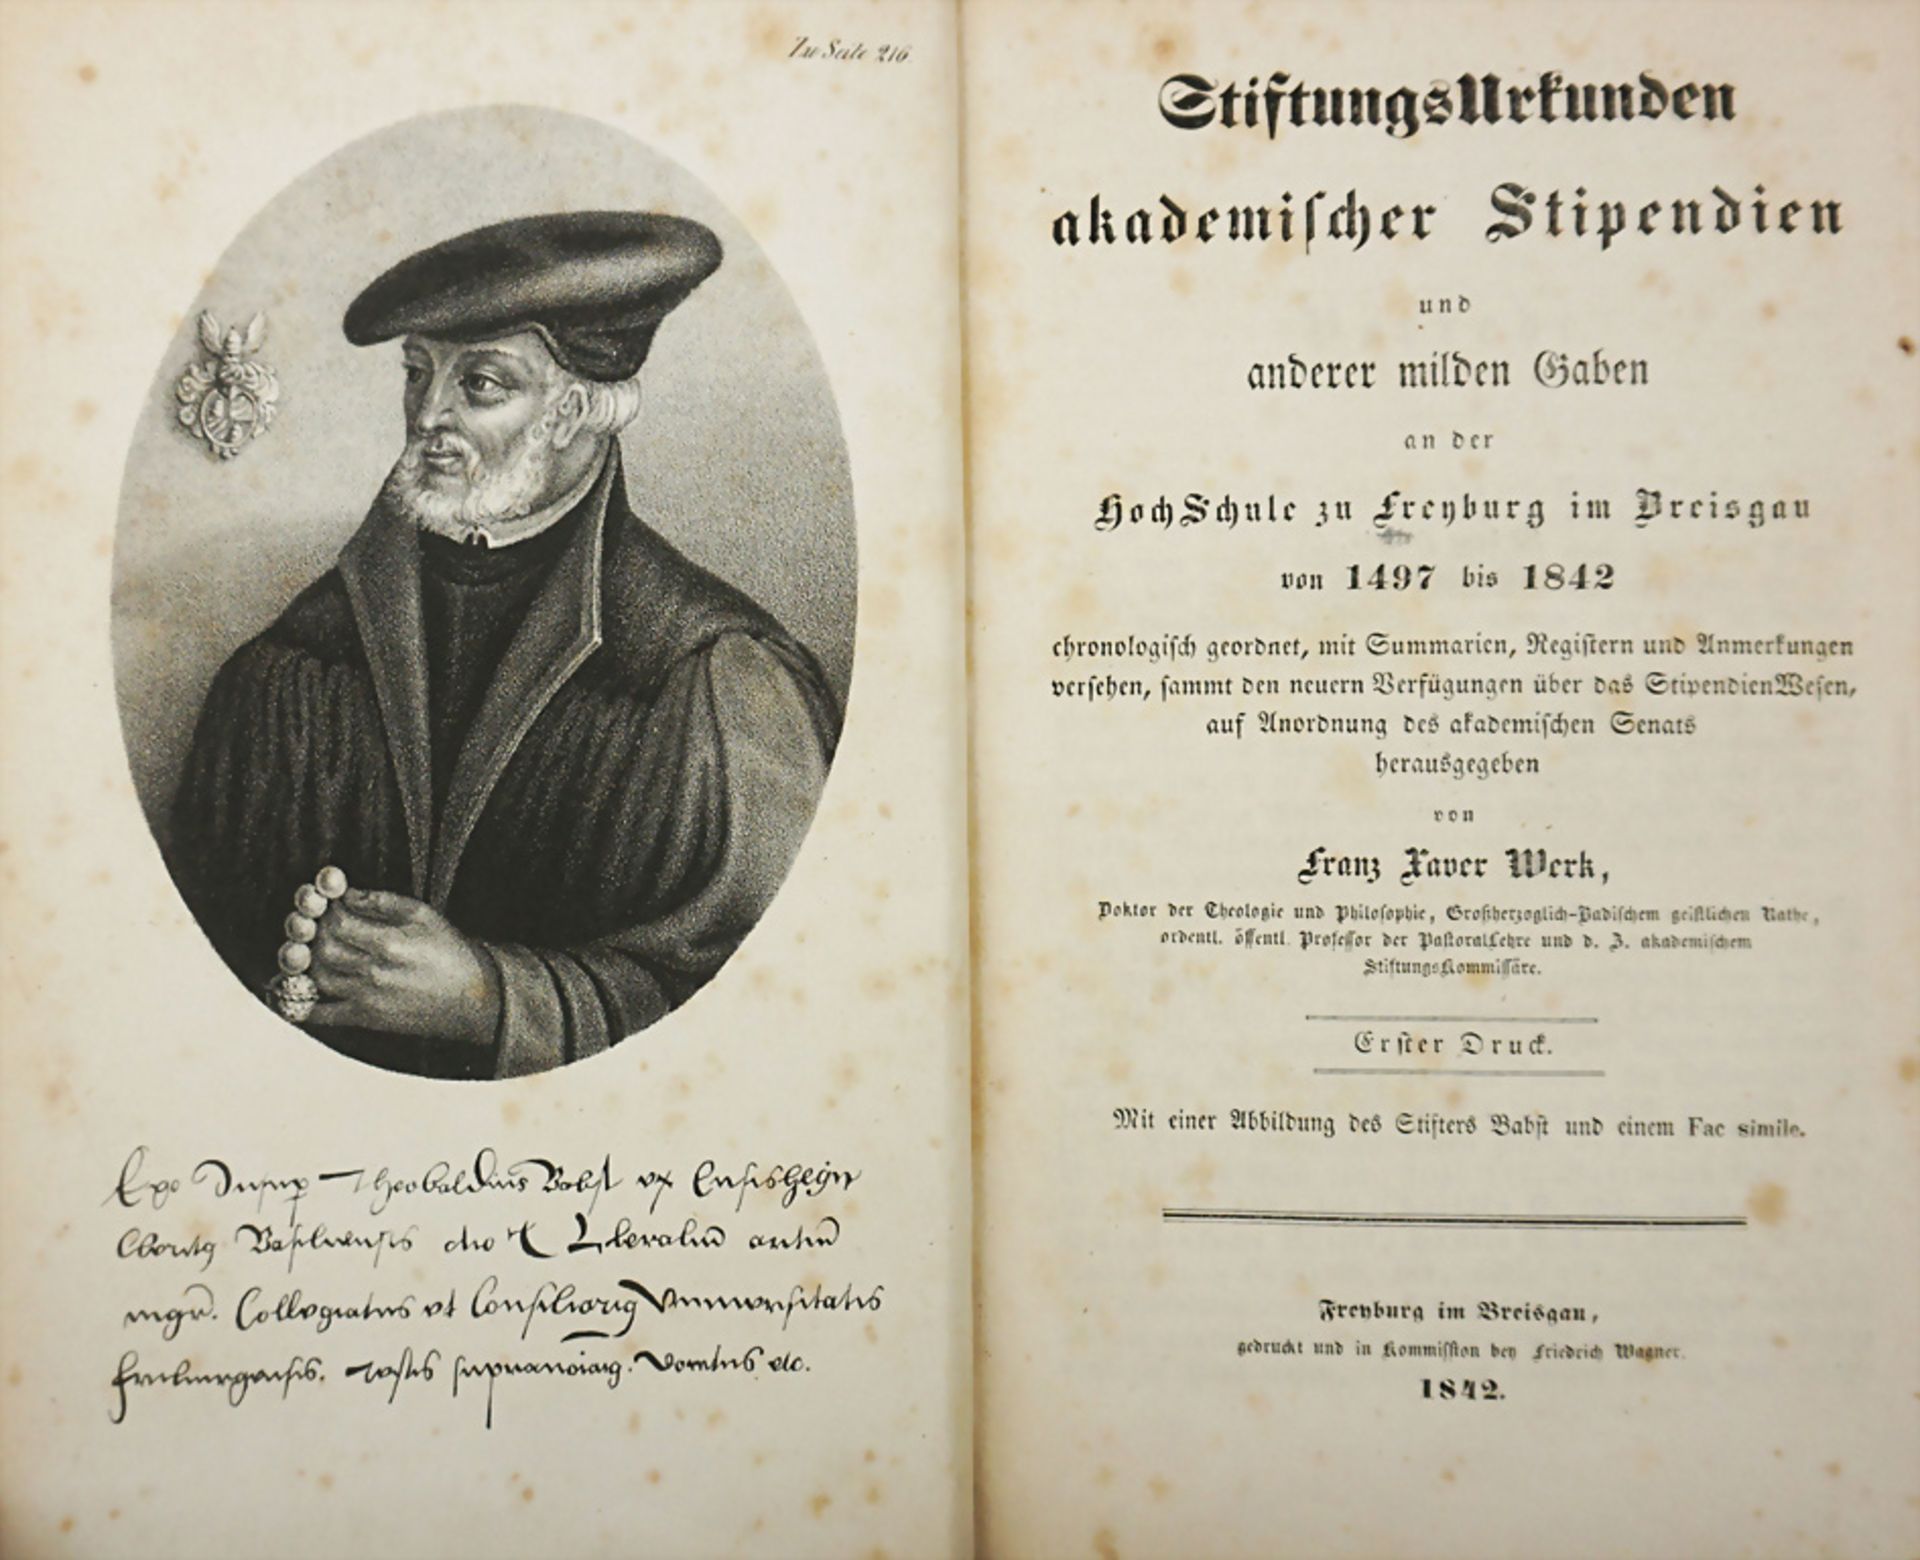 Studentika, Fr. Xaver Werk: Stiftungsurkunden akademischer Stipendien', Freiburg 1842